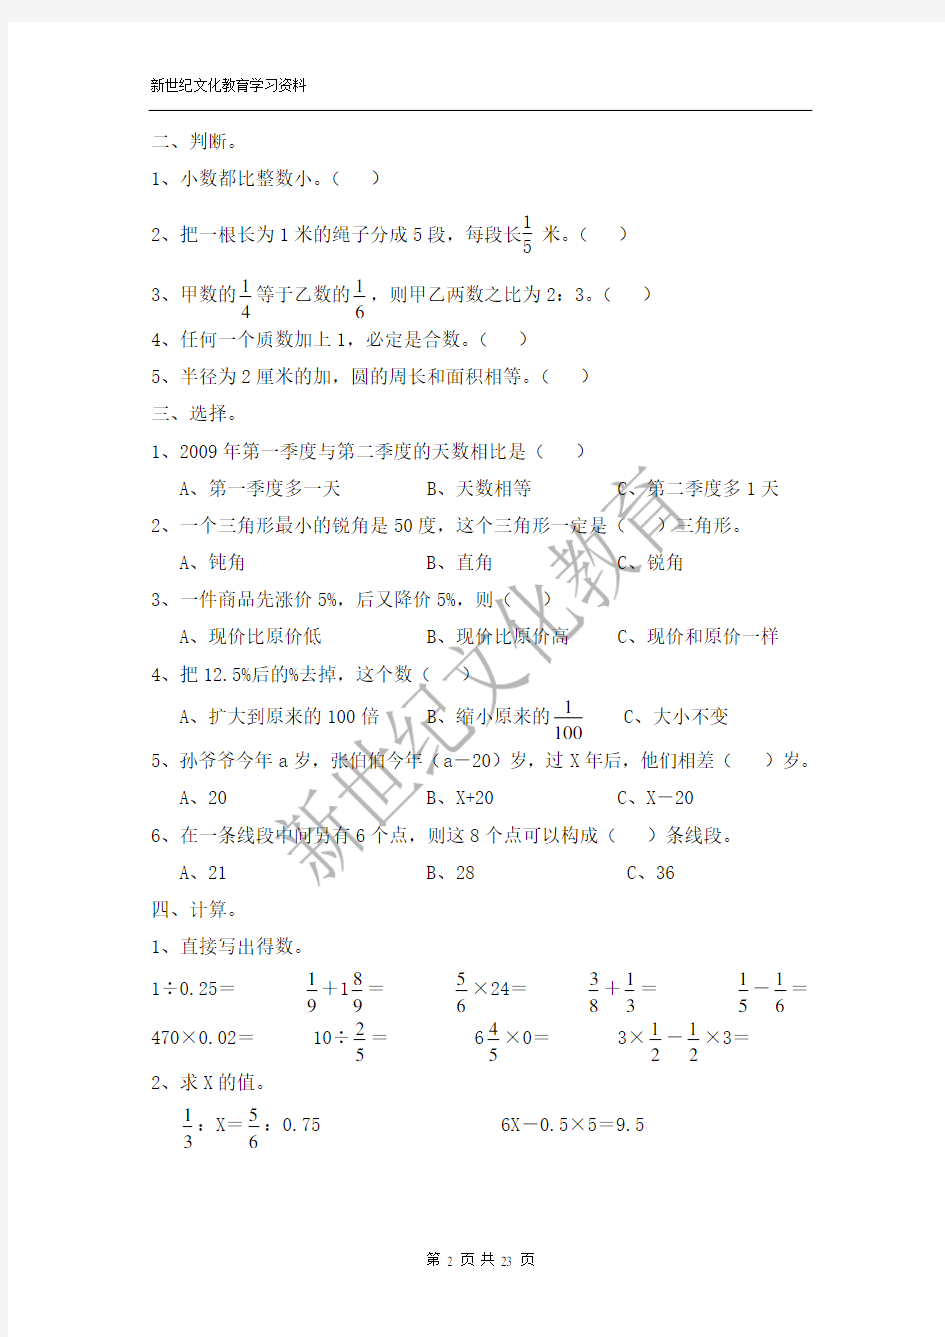 2013年小升初数学模拟试题及答案(4套)